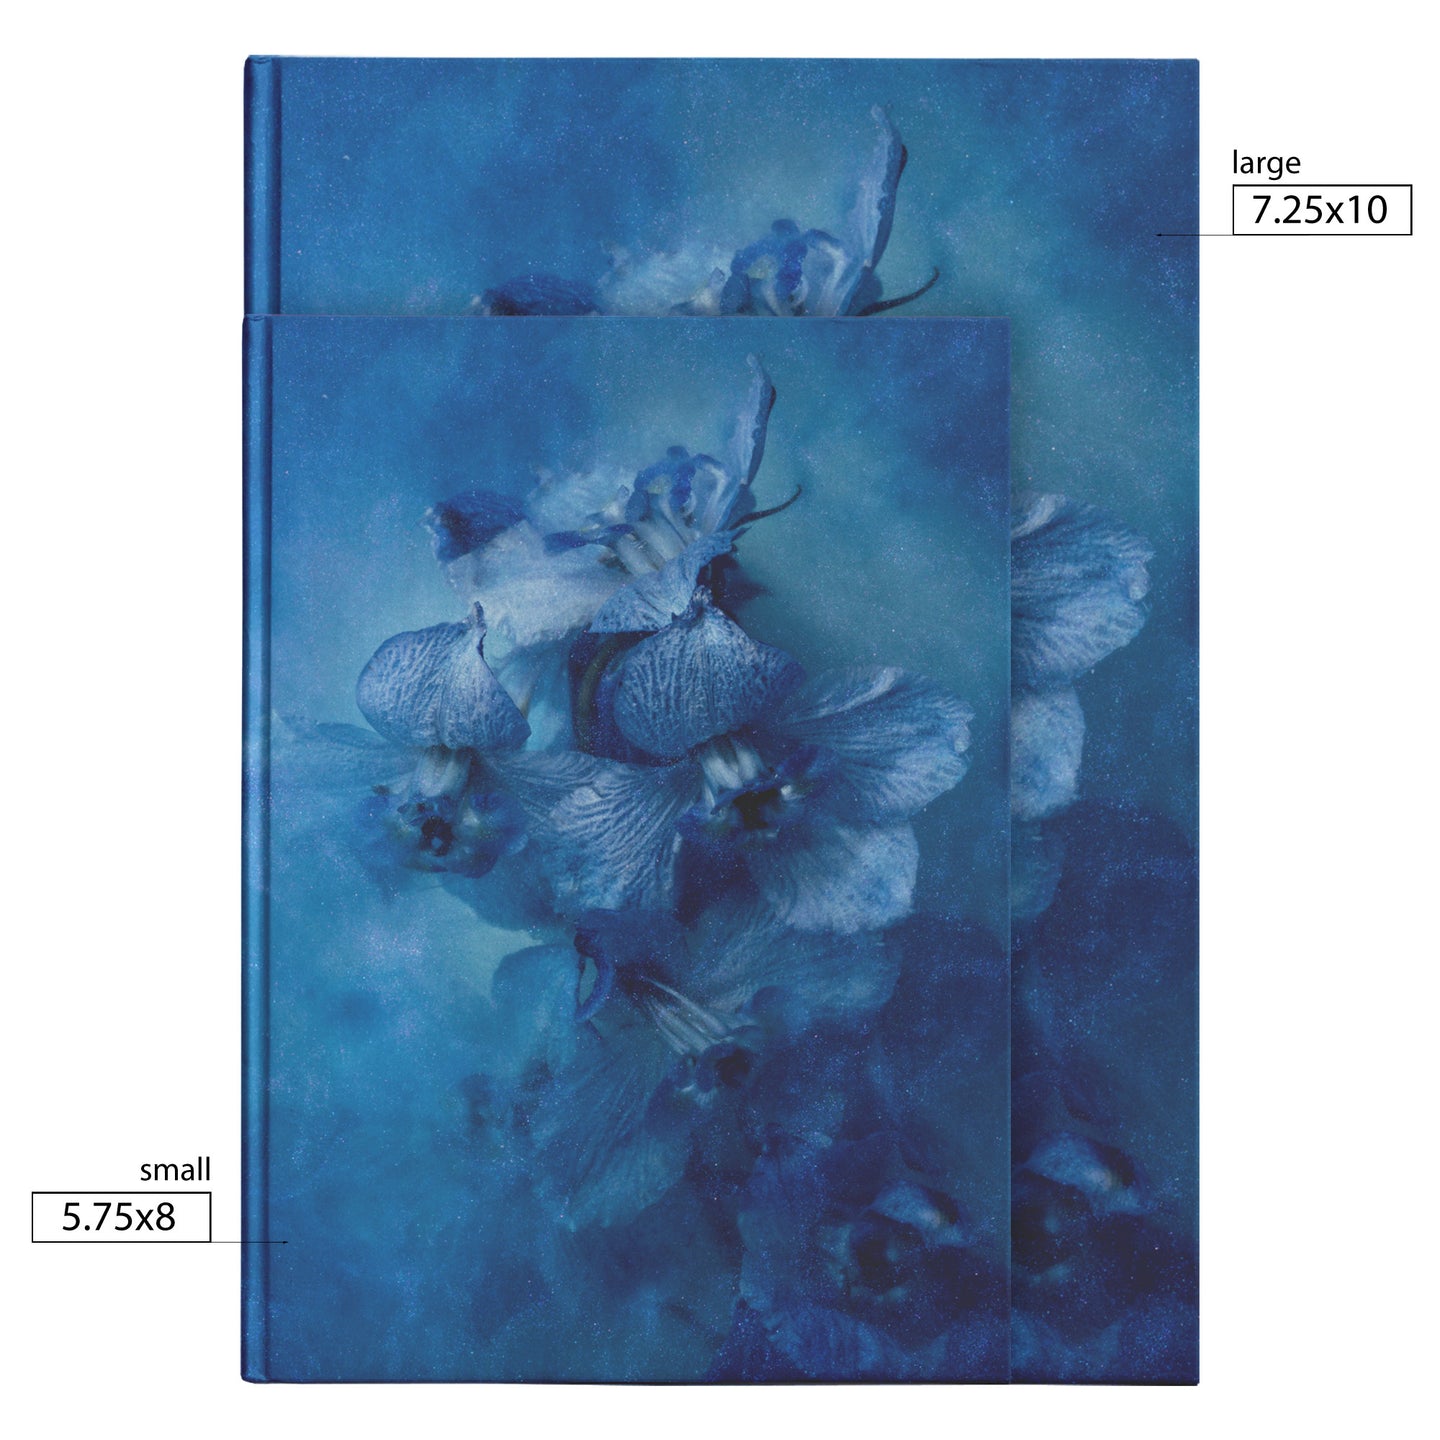 'Sink Into Blue' Velvet Touch Hard Cover Journal